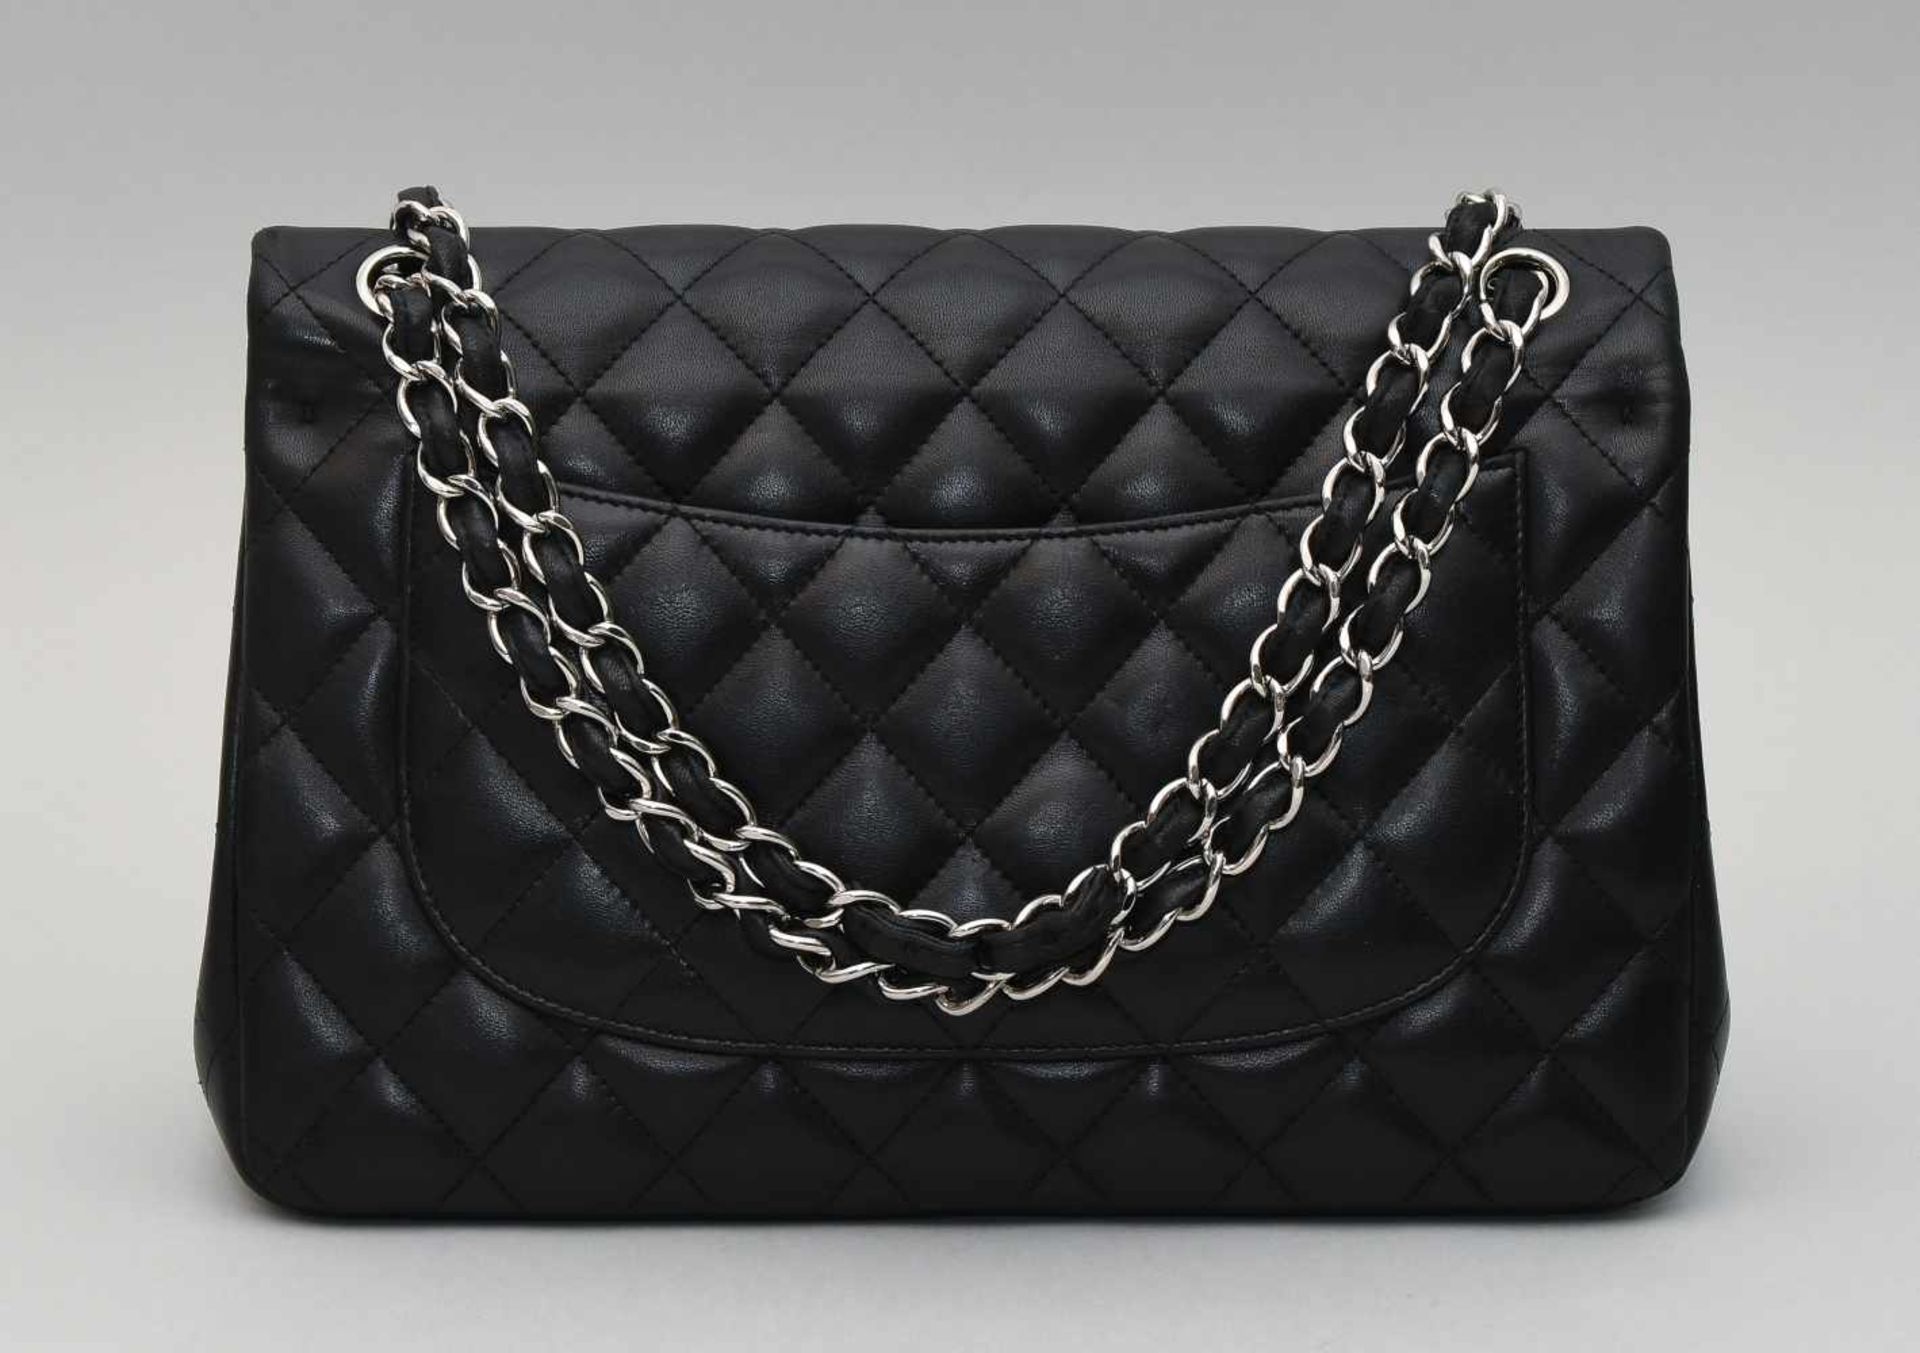 Chanel, Handtasche "Timeless" Jumbo Aus schwarzem Leder mit gestepptem Rautenmuster. - Bild 8 aus 13